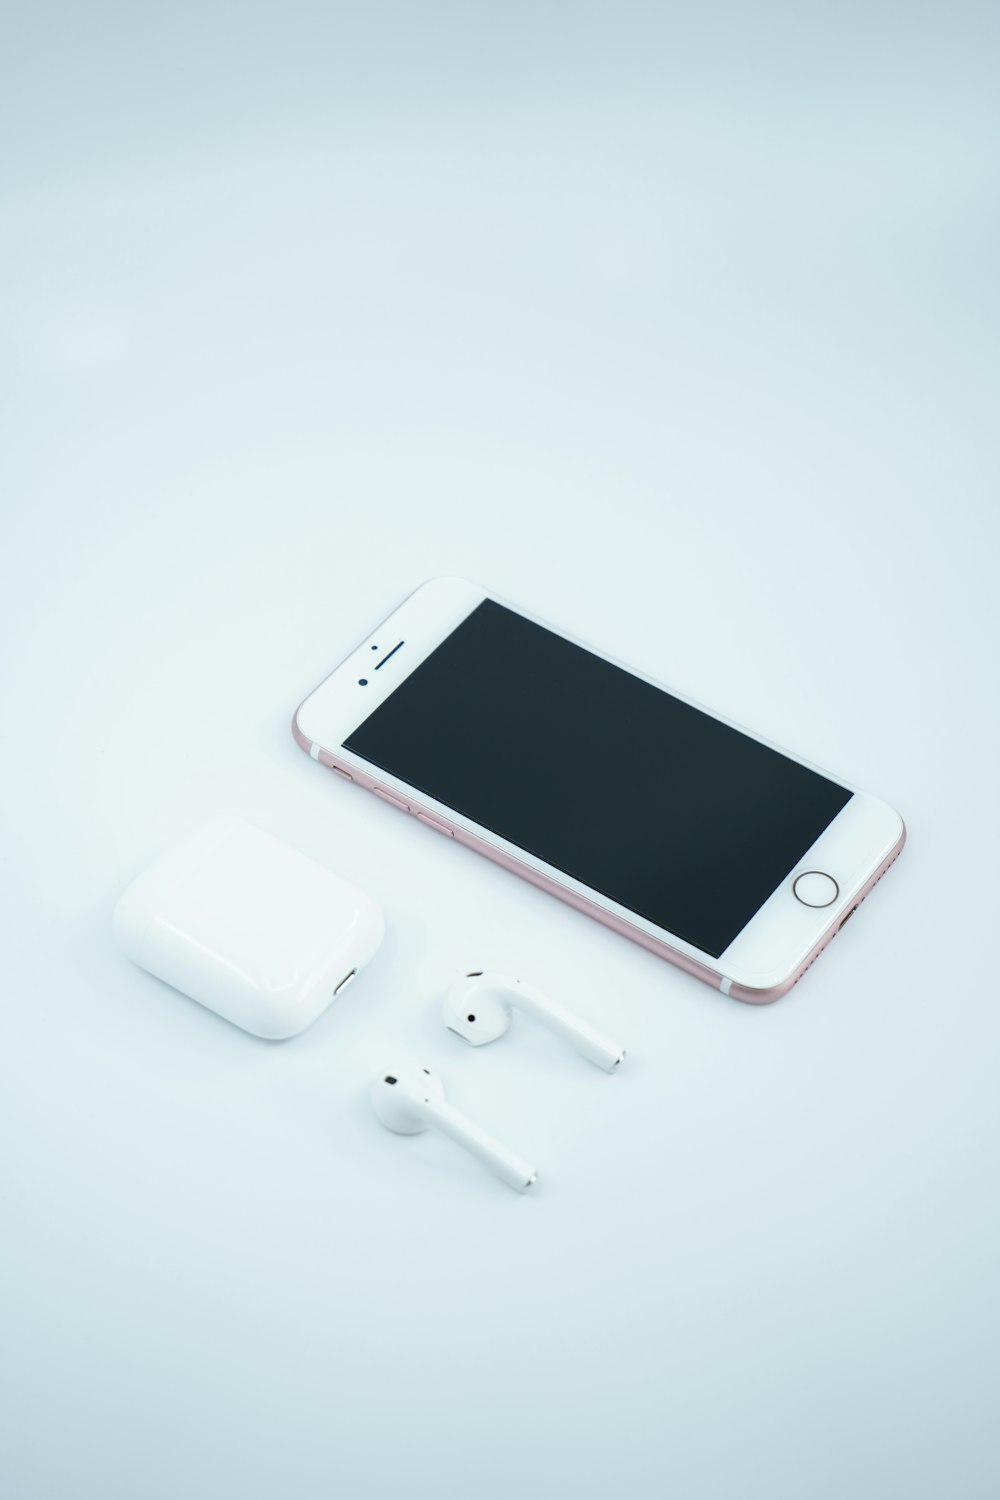 Weißes iPhone 5 C neben weißen Ohrhörern